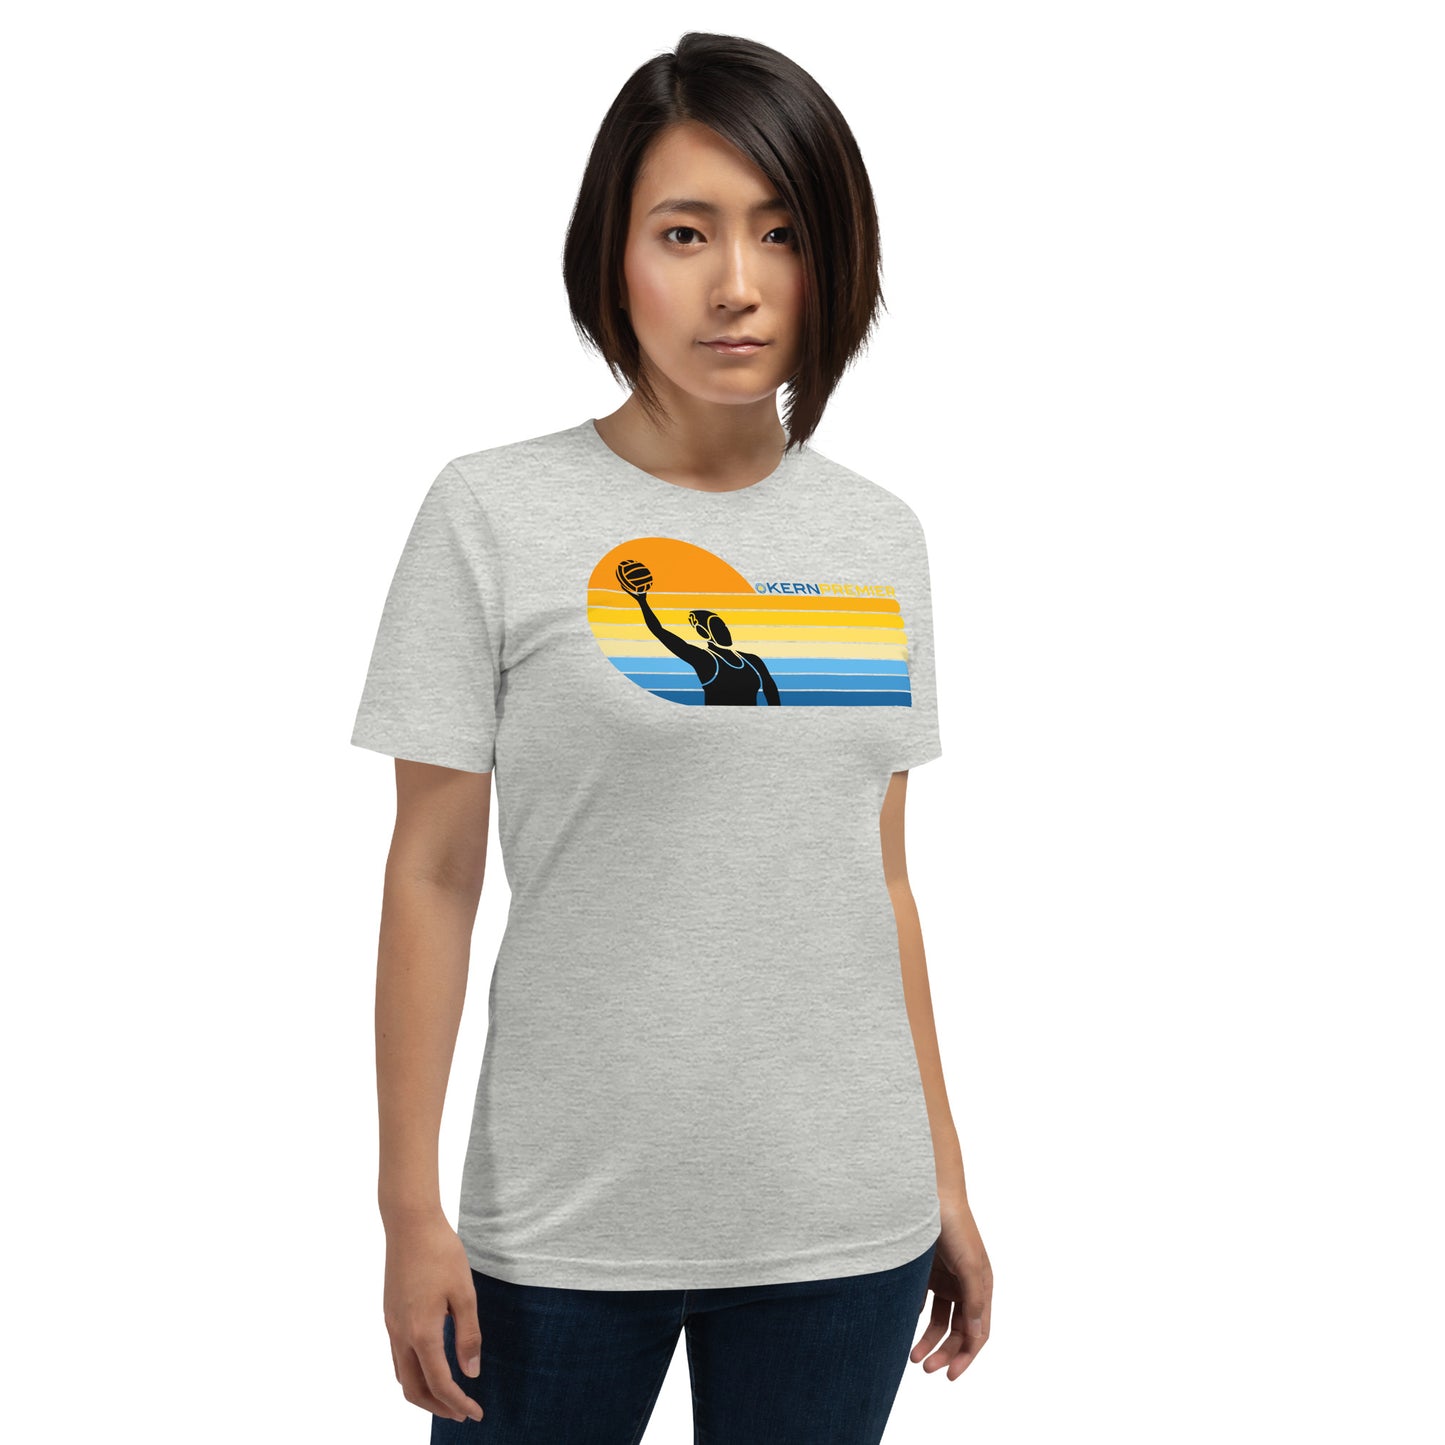 Kern Premier 7 color sunset left orientation female silhouette - Unisex Soft T-shirt - Bella Canvas 3001